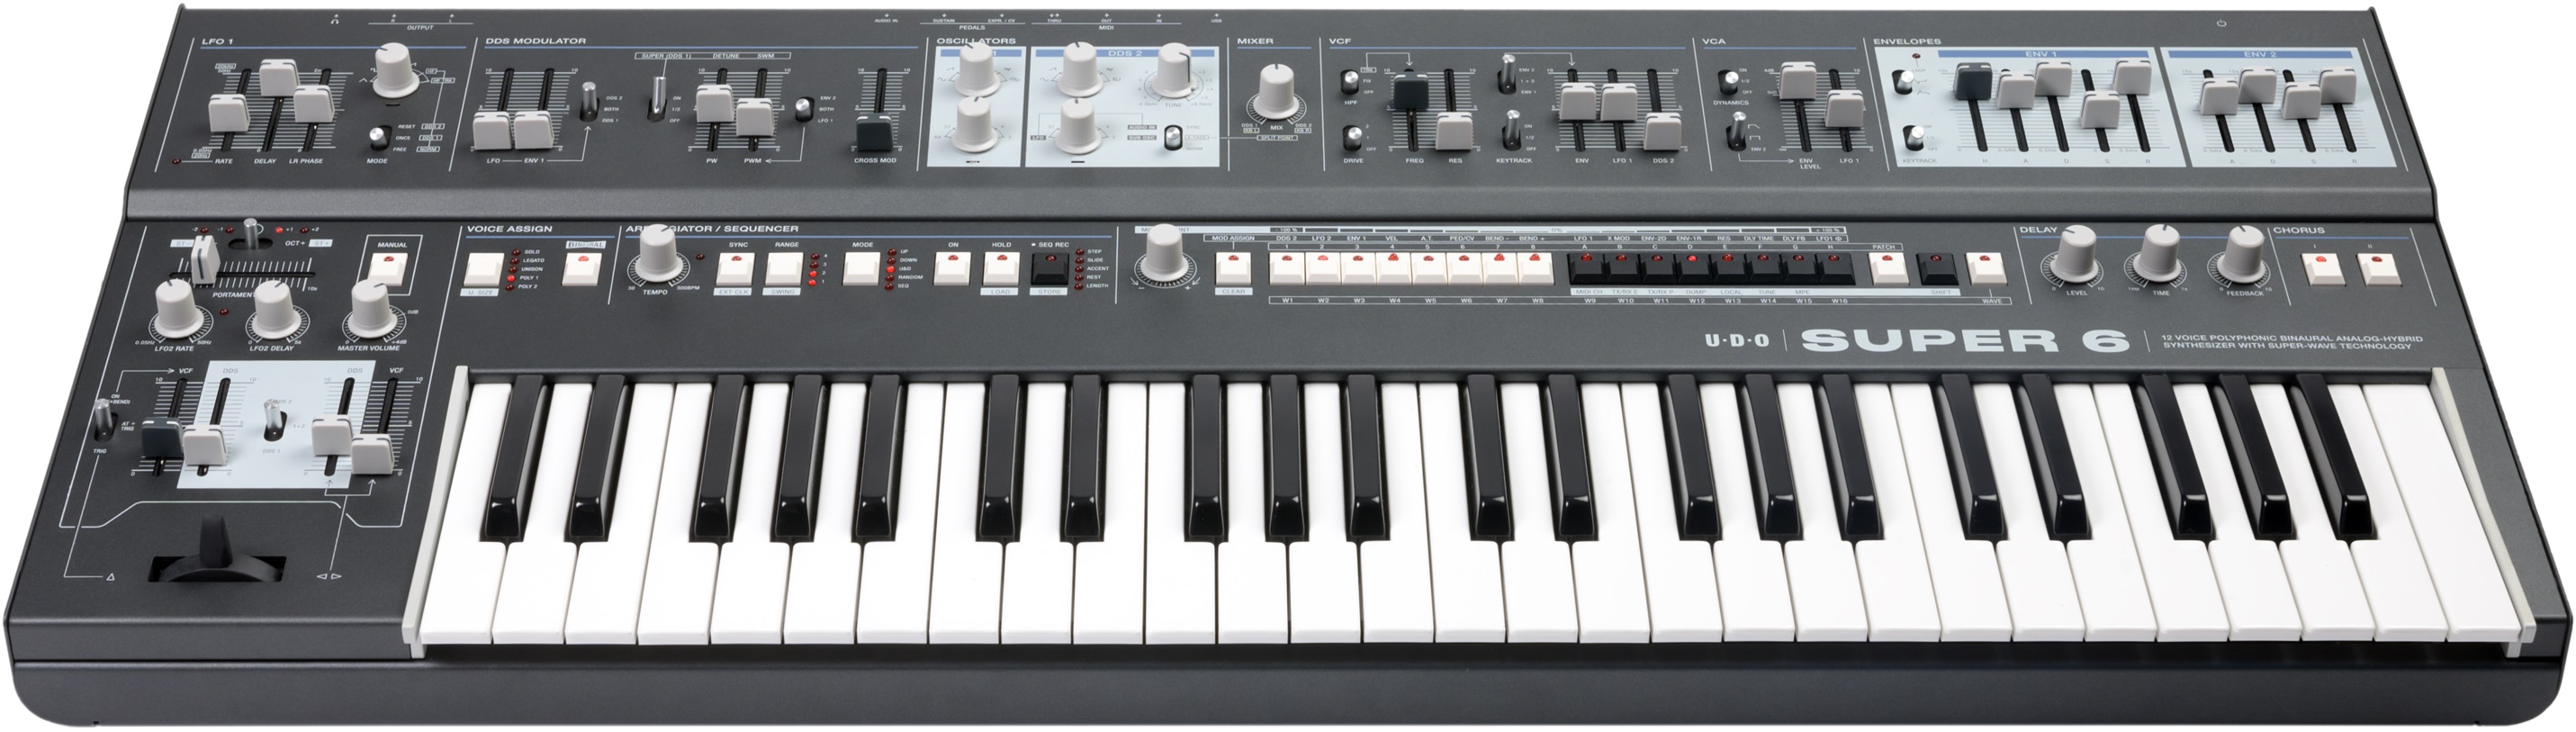 Udo Audio Super 6 Keyboard Black - Sintetizador - Variation 3